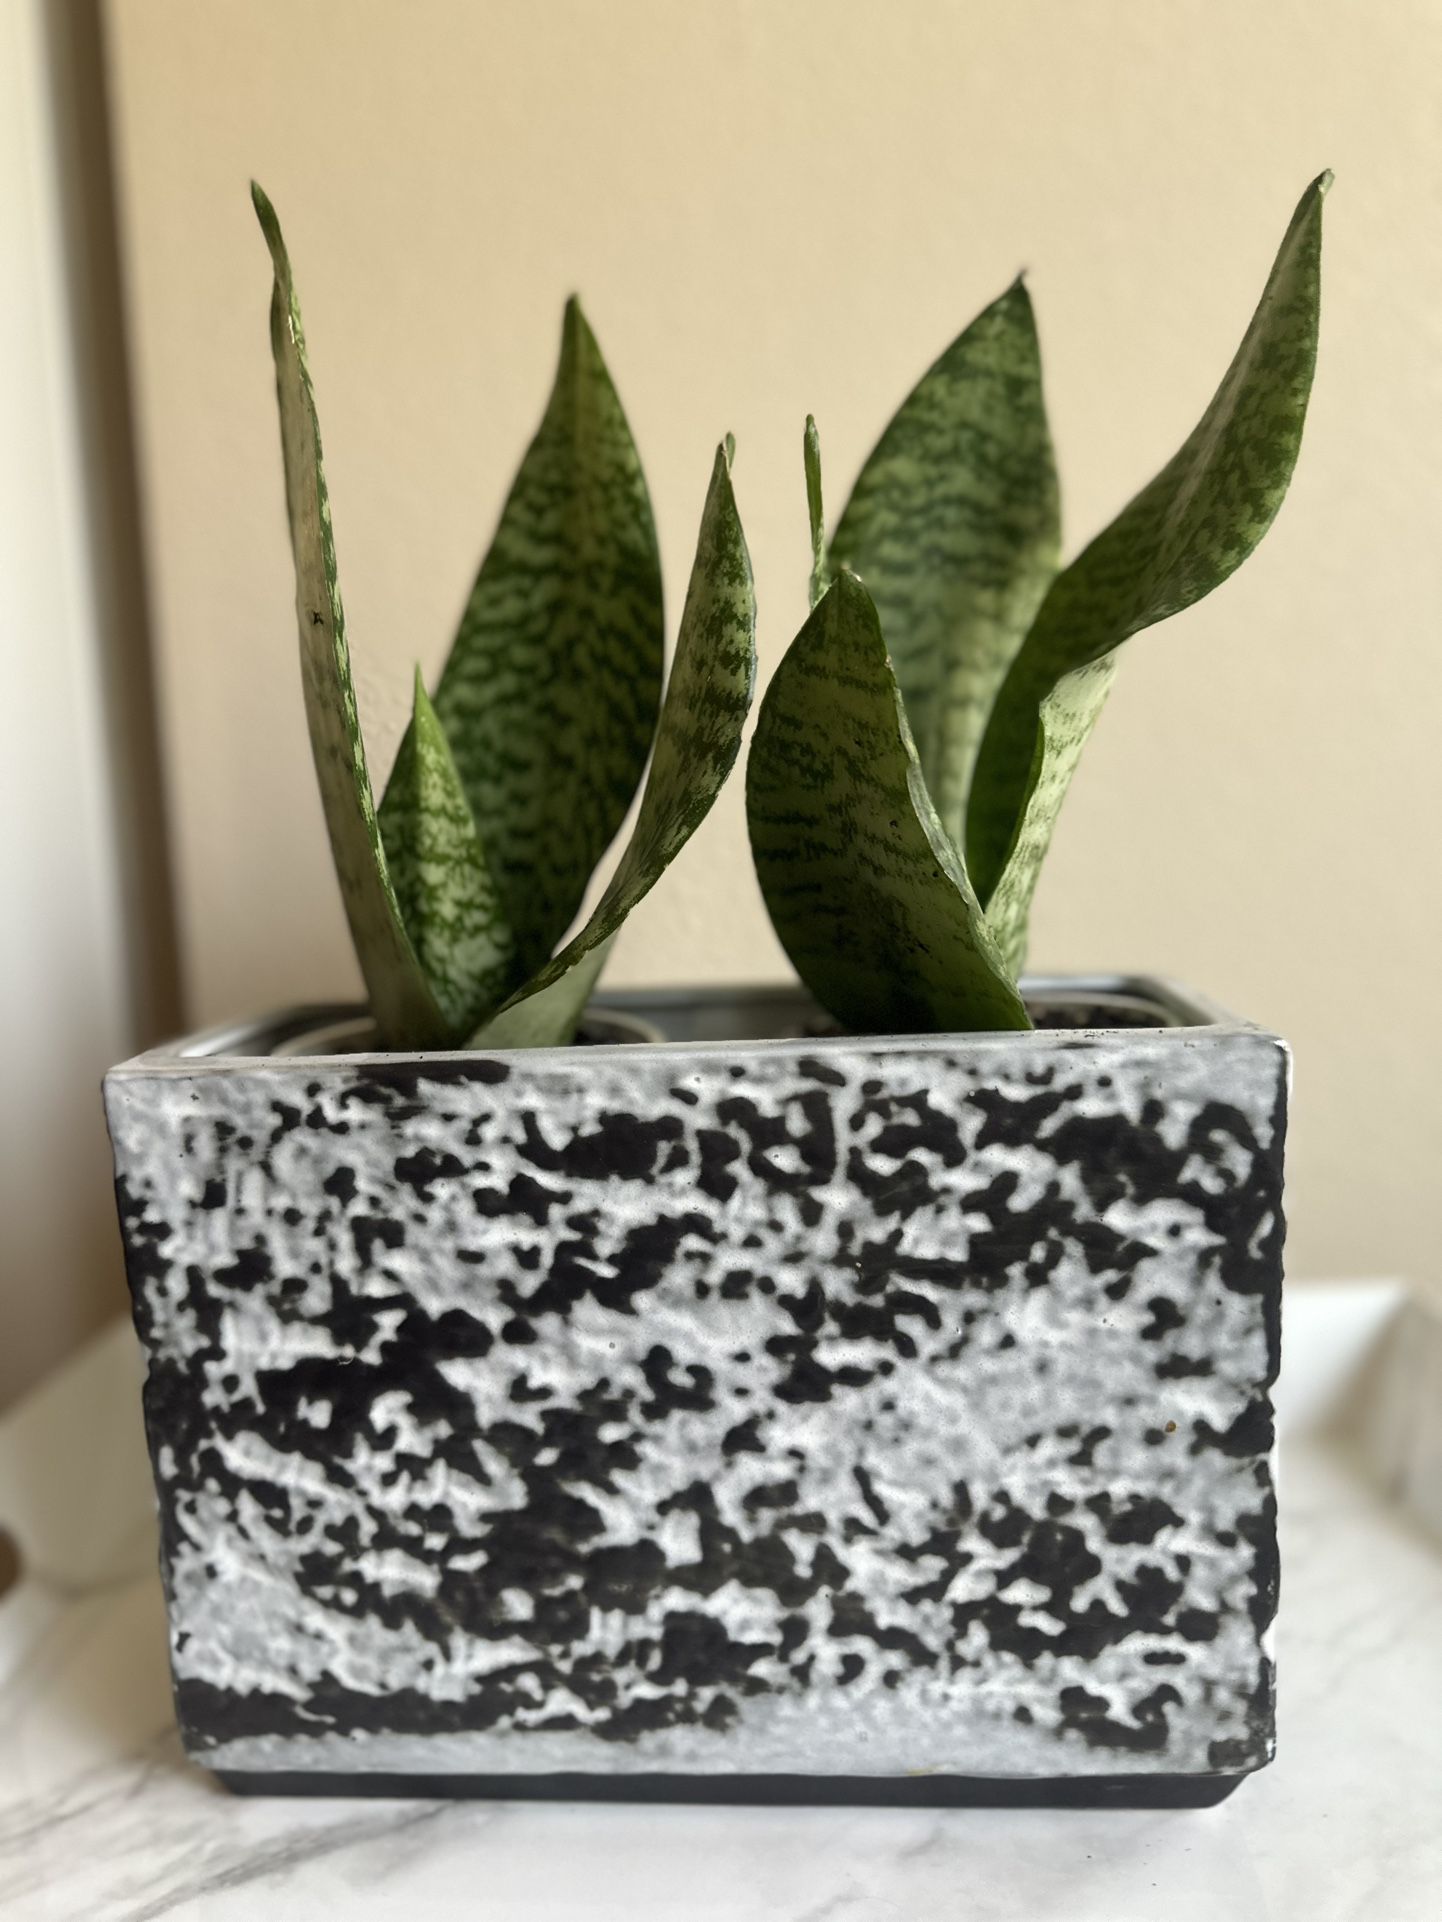 Two Snake Plants In Ceramic Pot